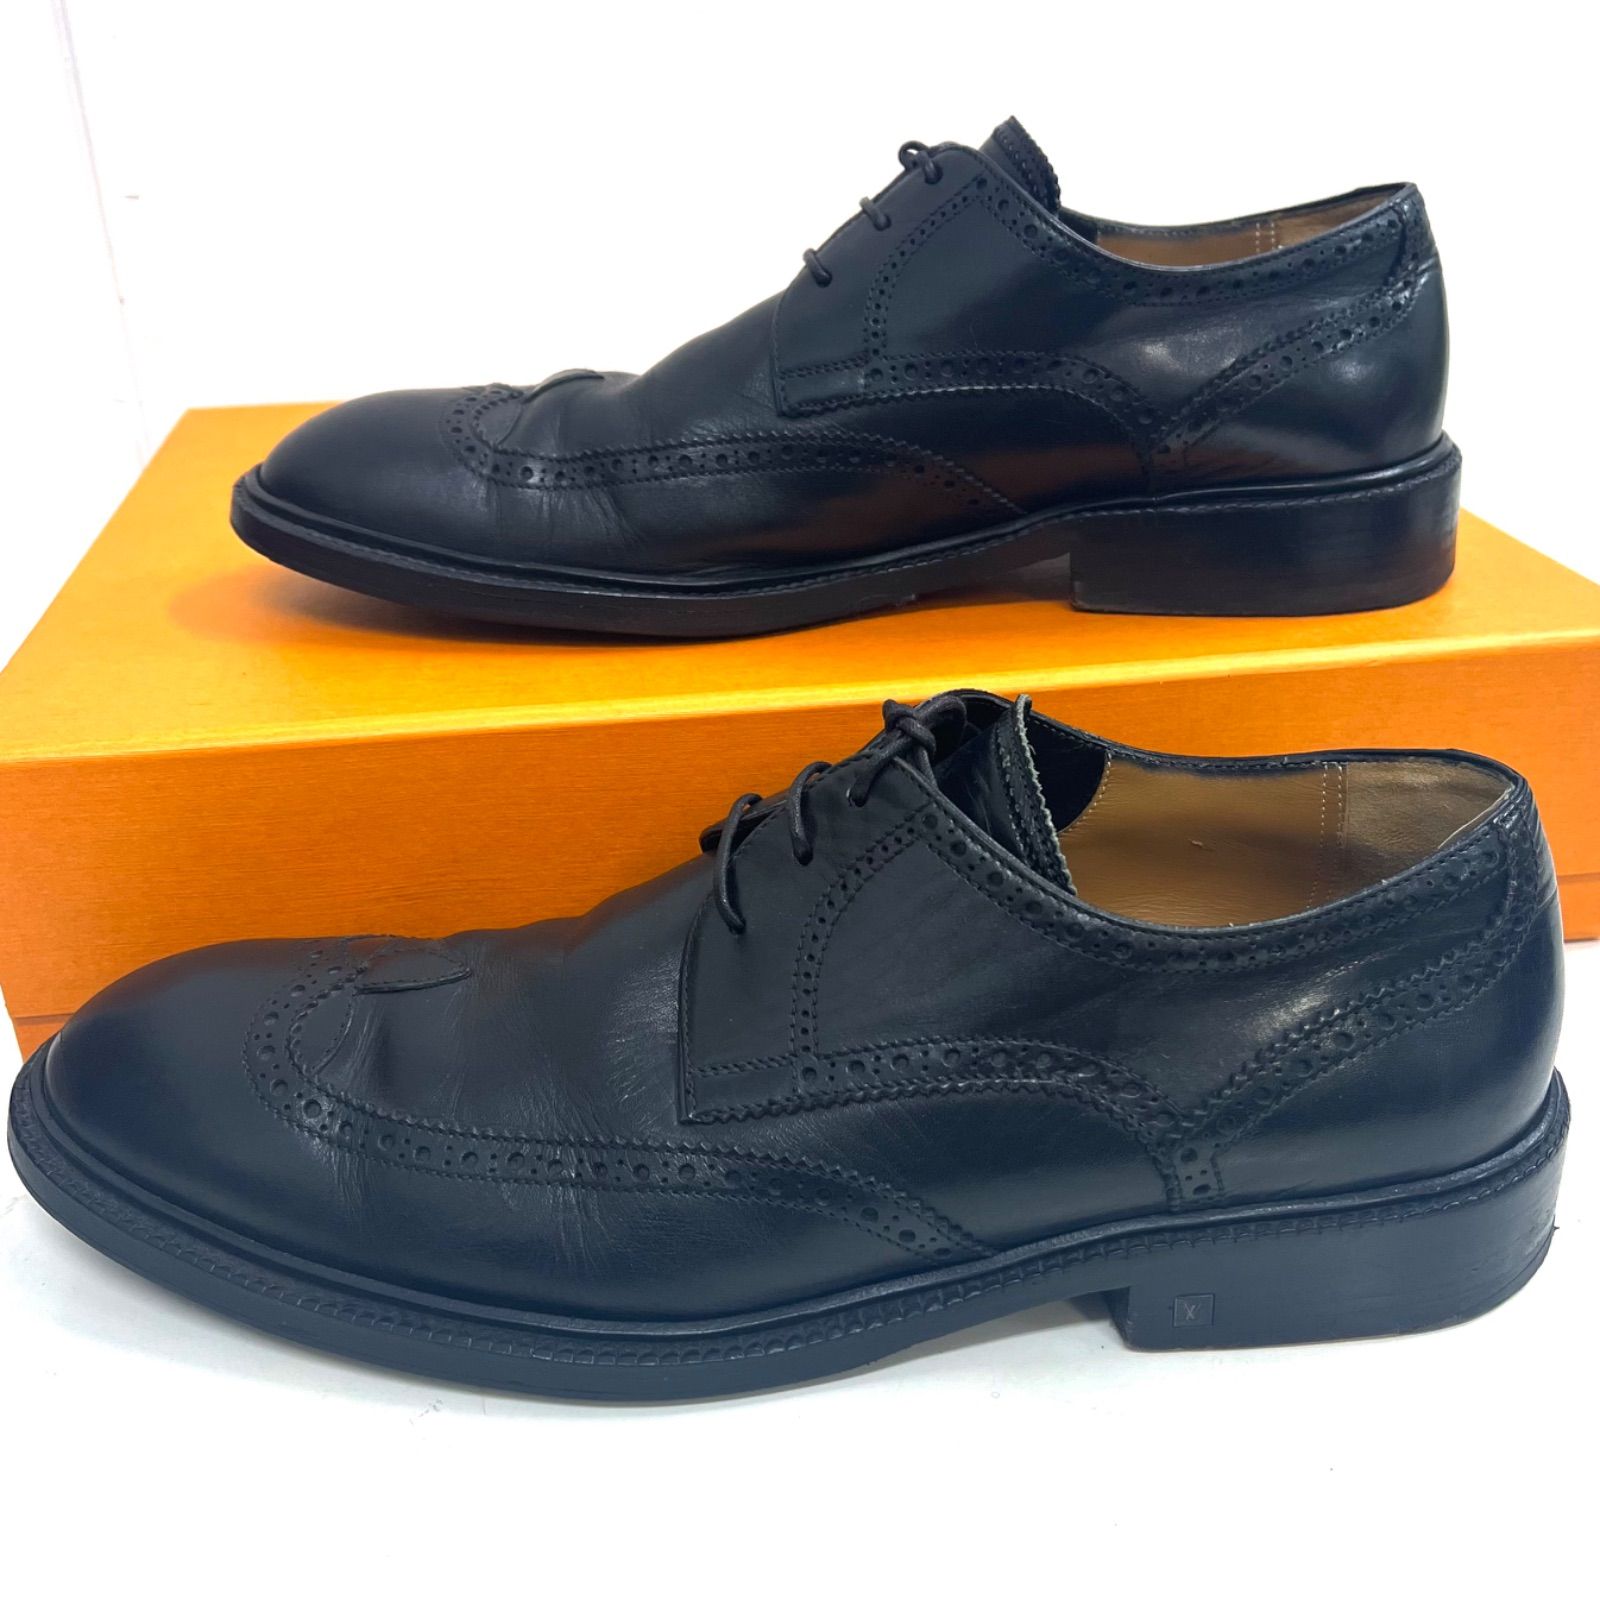 売り切り☆ルイヴィトン 革靴 ウイングチップ 黒 6.5(25.5)ビジネス65255cm相当